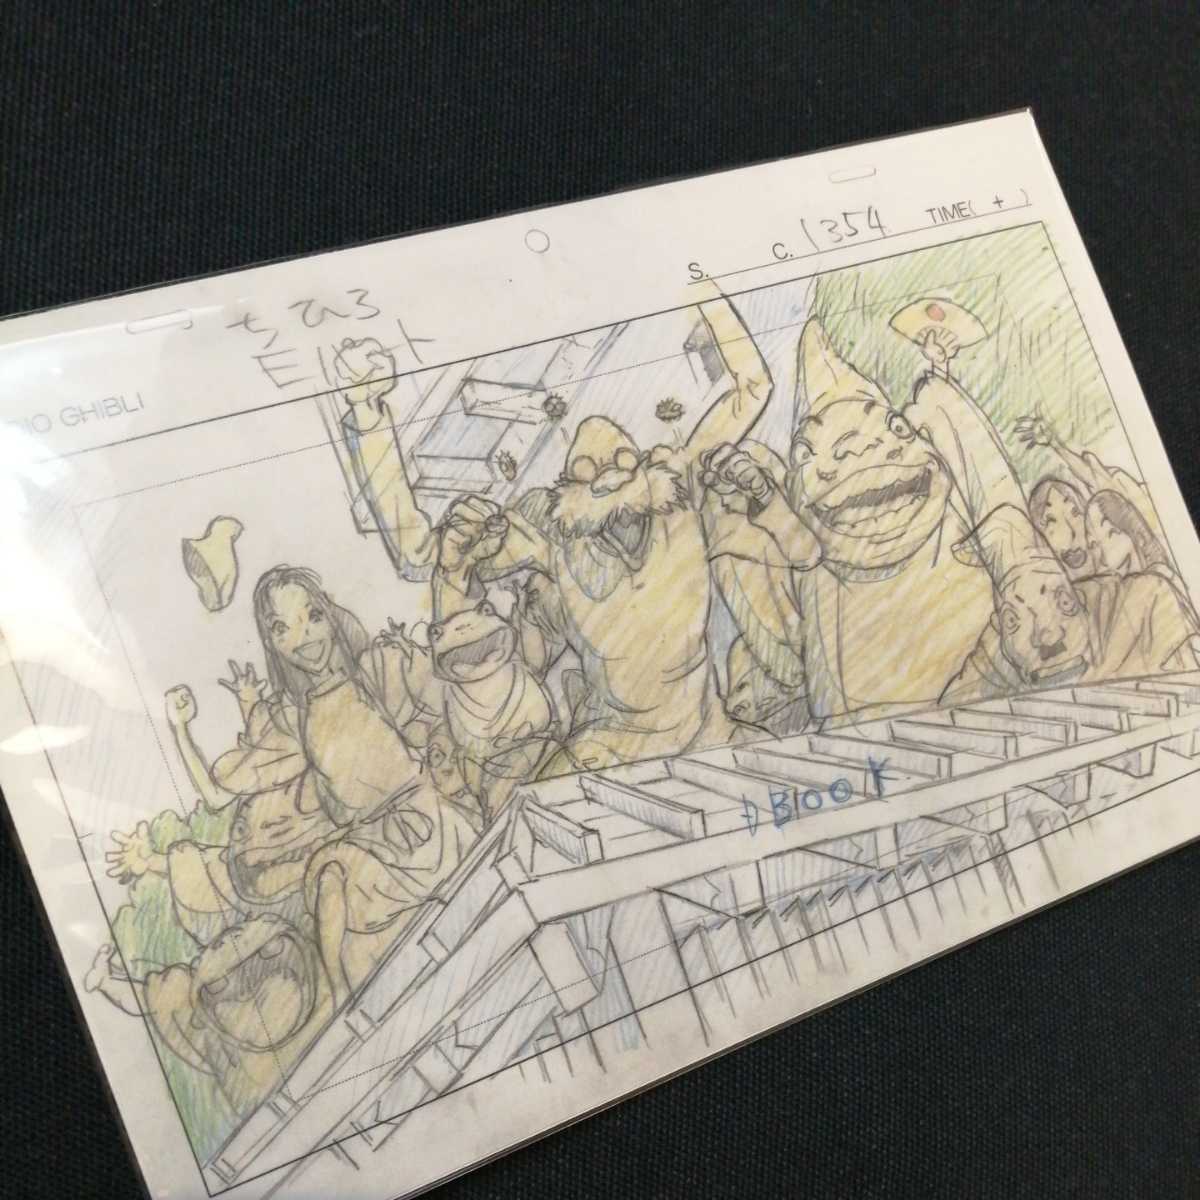  Studio Ghibli тысяч . тысяч .. бог .. расположение порез . осмотр ) Ghibli открытка постер исходная картина цифровая картинка расположение выставка Miyazaki .a